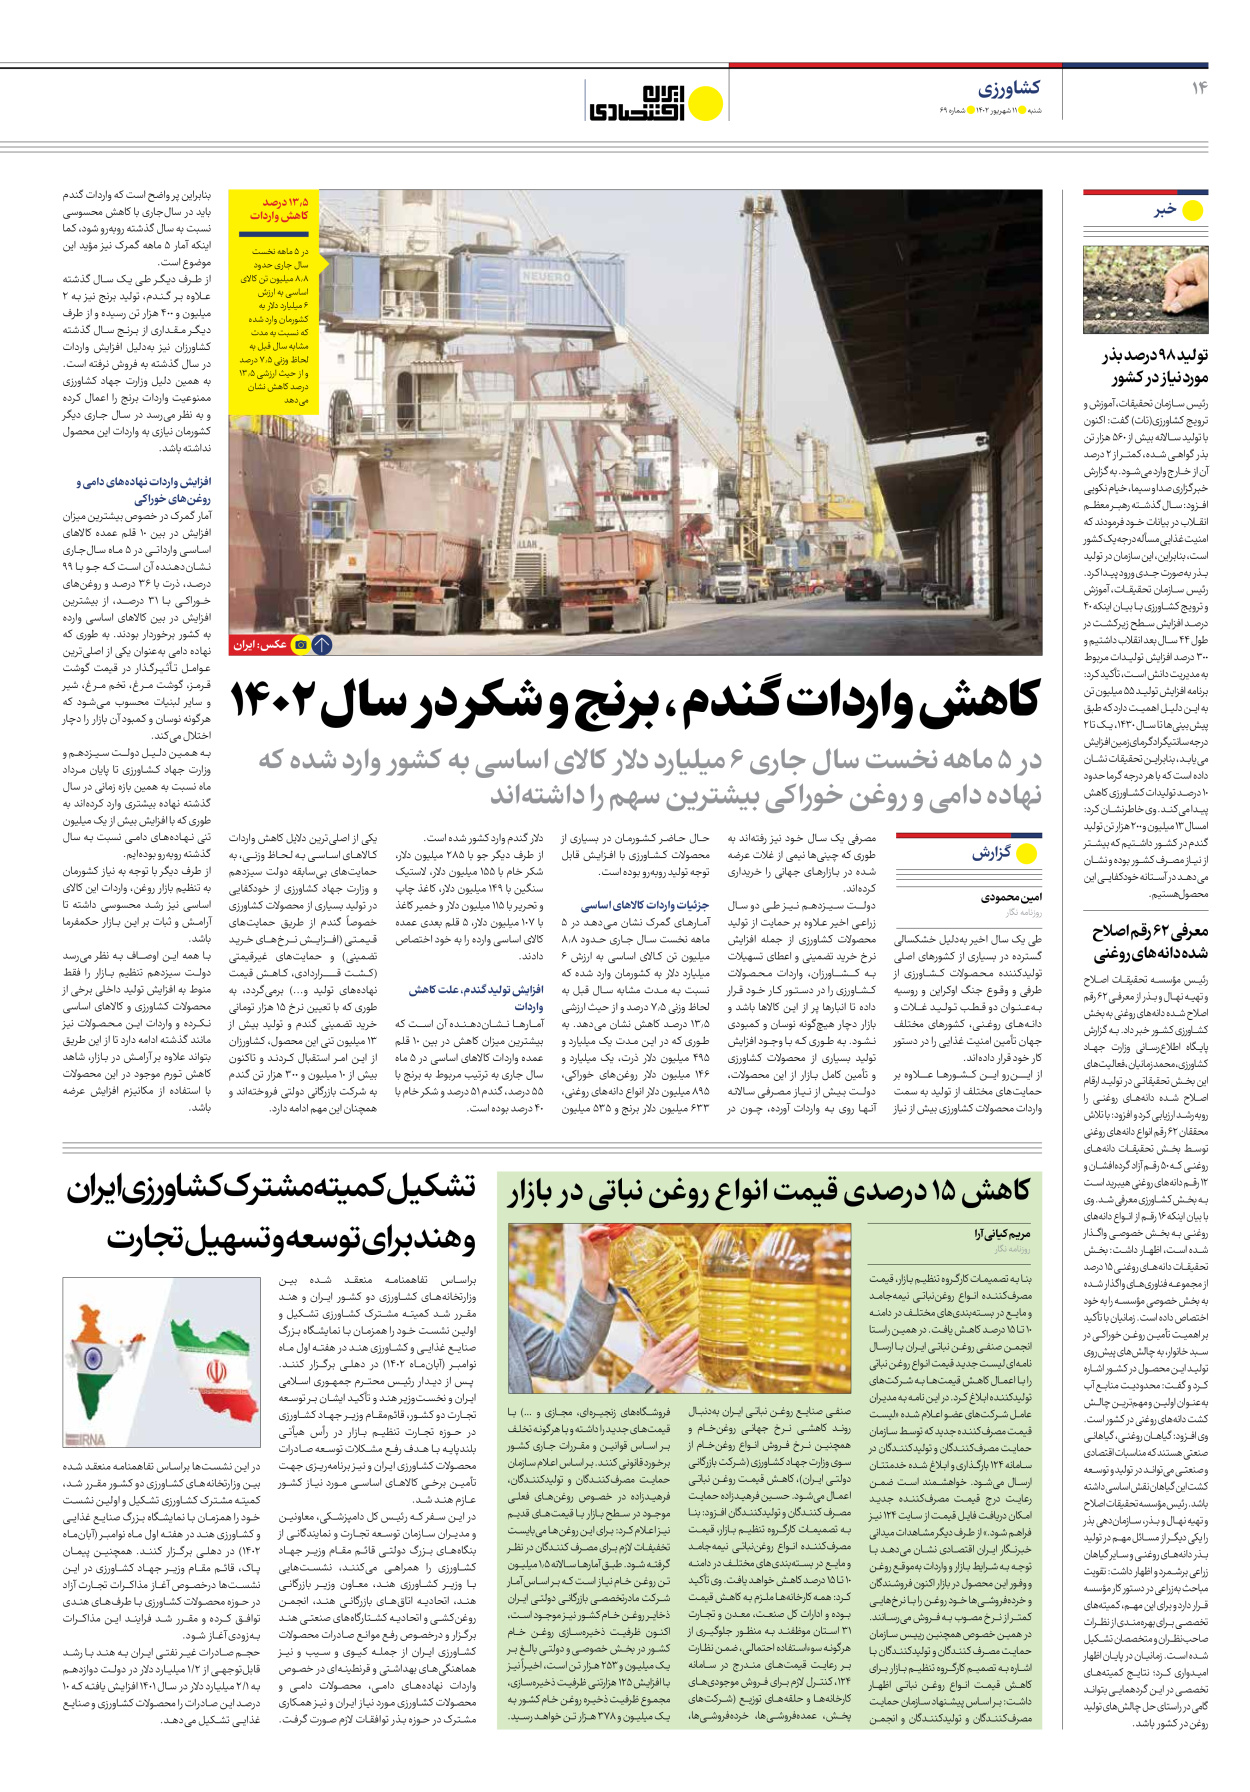 روزنامه ایران اقتصادی - شماره شصت و نه - ۱۱ شهریور ۱۴۰۲ - صفحه ۱۴